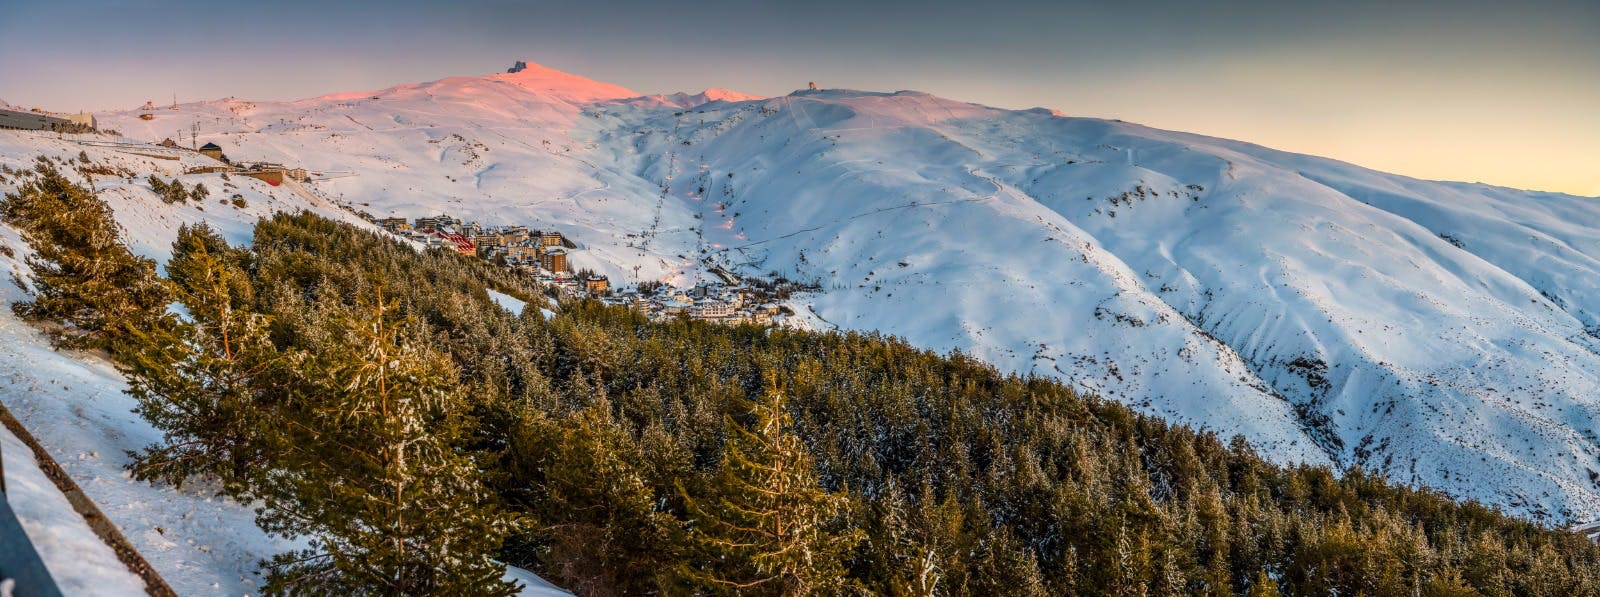 Image 33 of PepeMarinSN9 2 in Cosentino, Official Sponsor of Sierra Nevada's Ski Resort - Cosentino